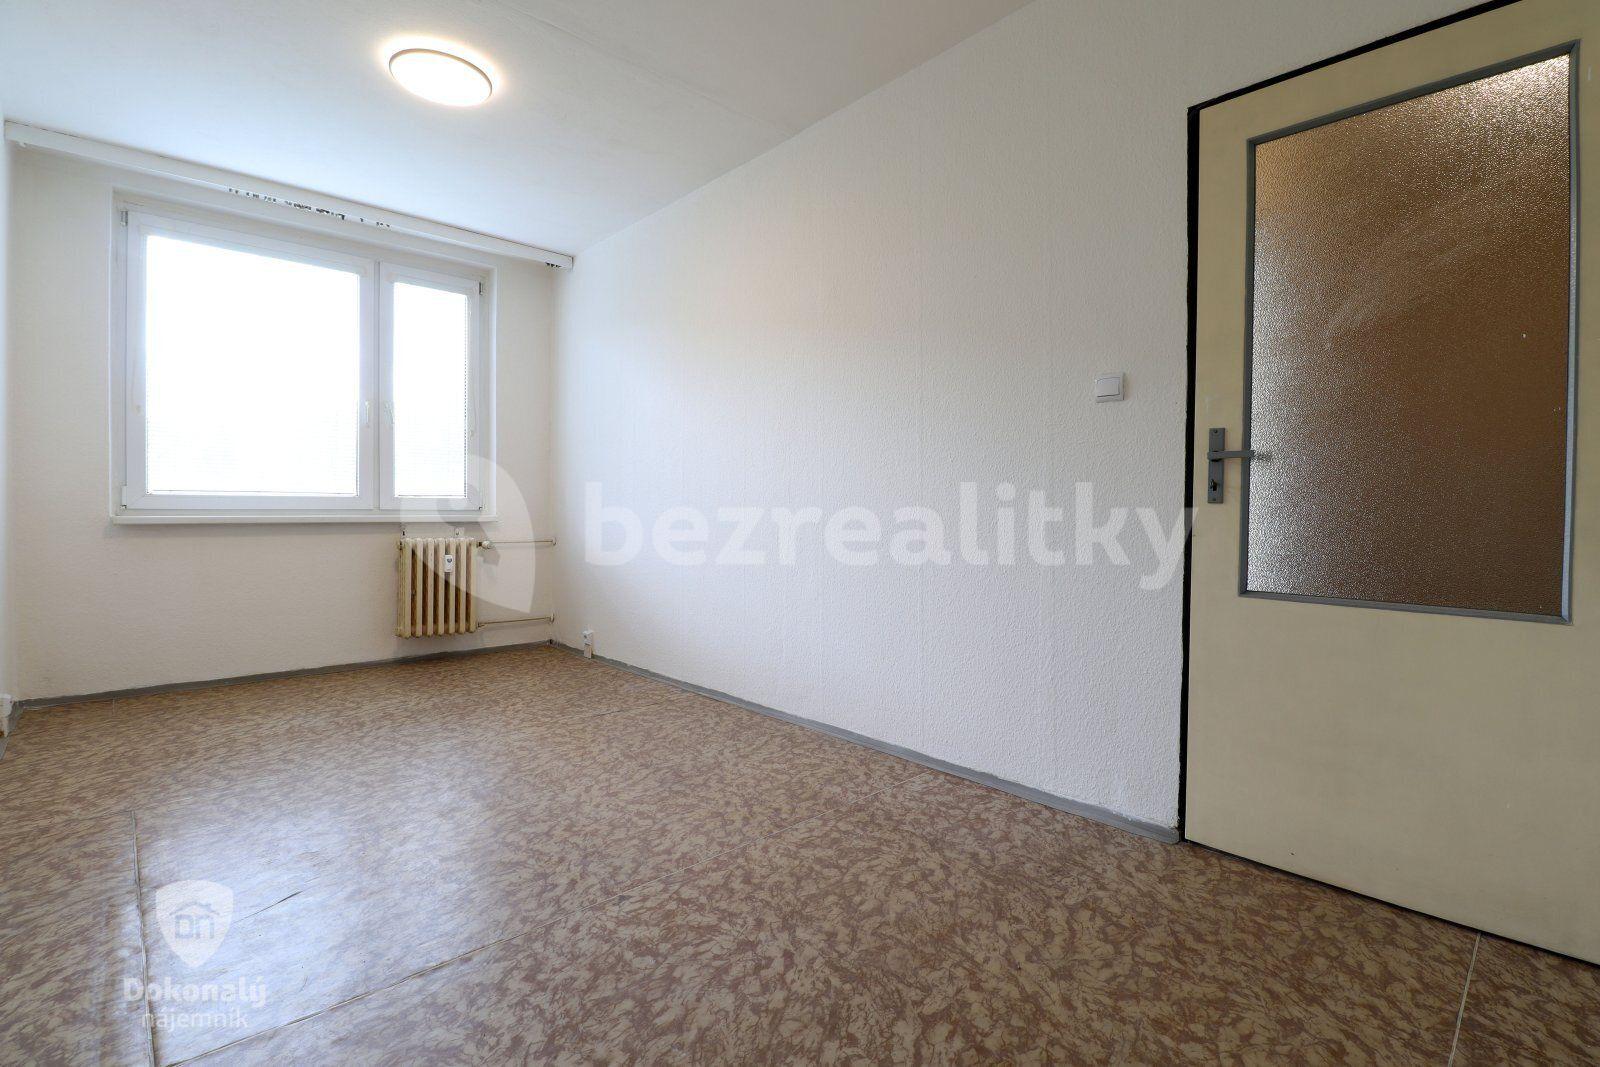 3 bedroom flat to rent, 76 m², Kurzova, Prague, Prague